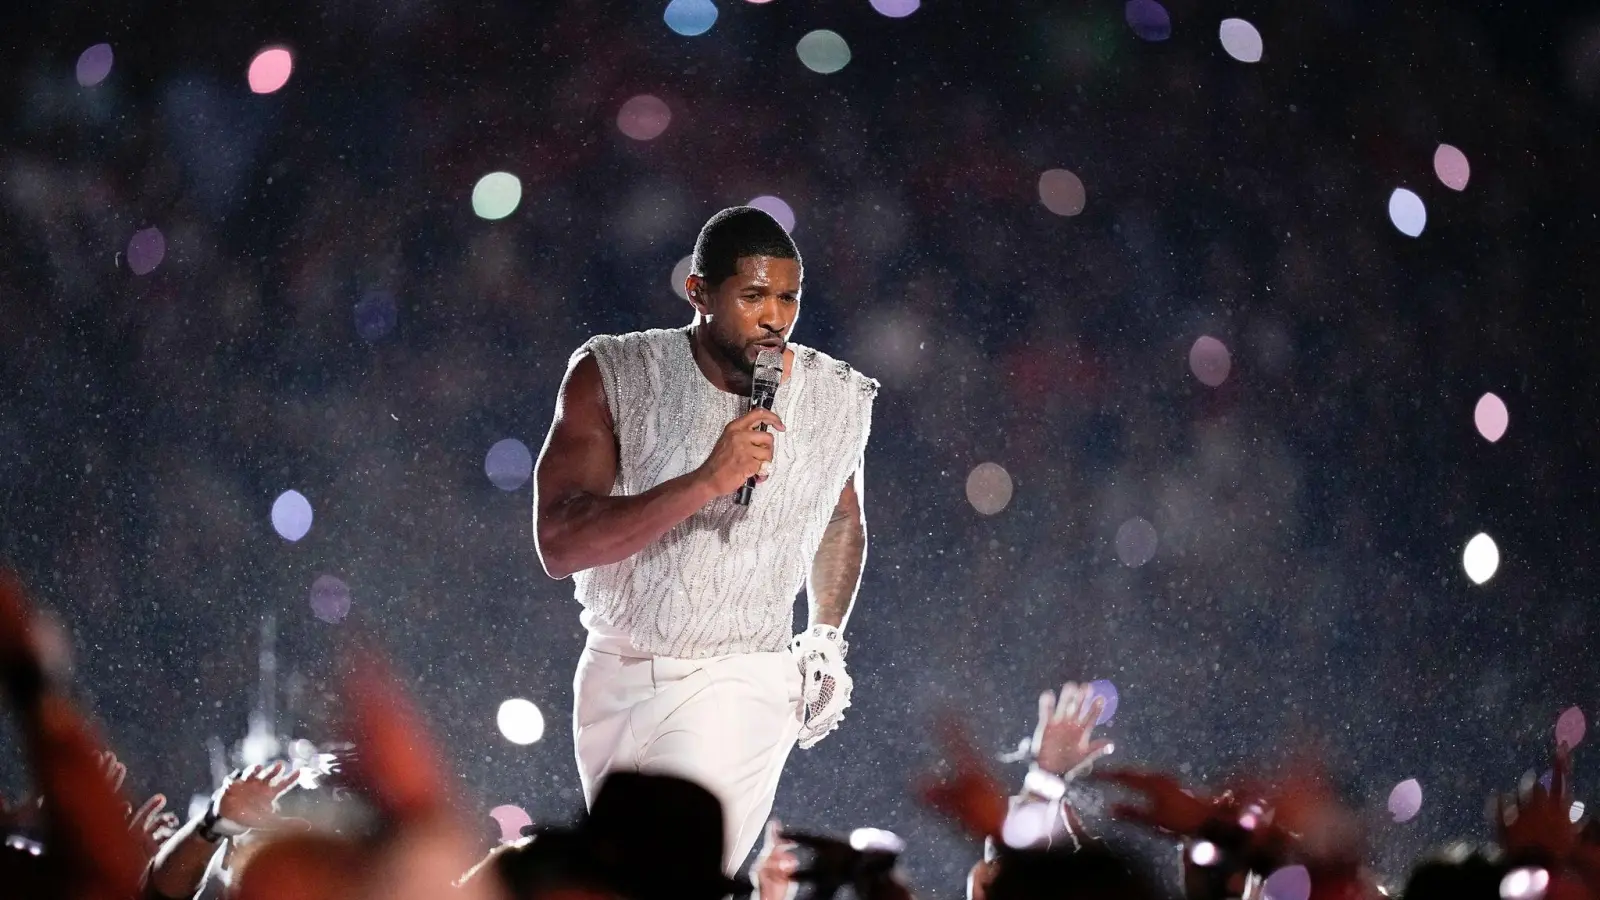 Usher war schon 2011 gemeinsam mit den Black Eyed Peas in der Halbzeitshow aufgetreten. (Bild: Brynn Anderson/AP/dpa)